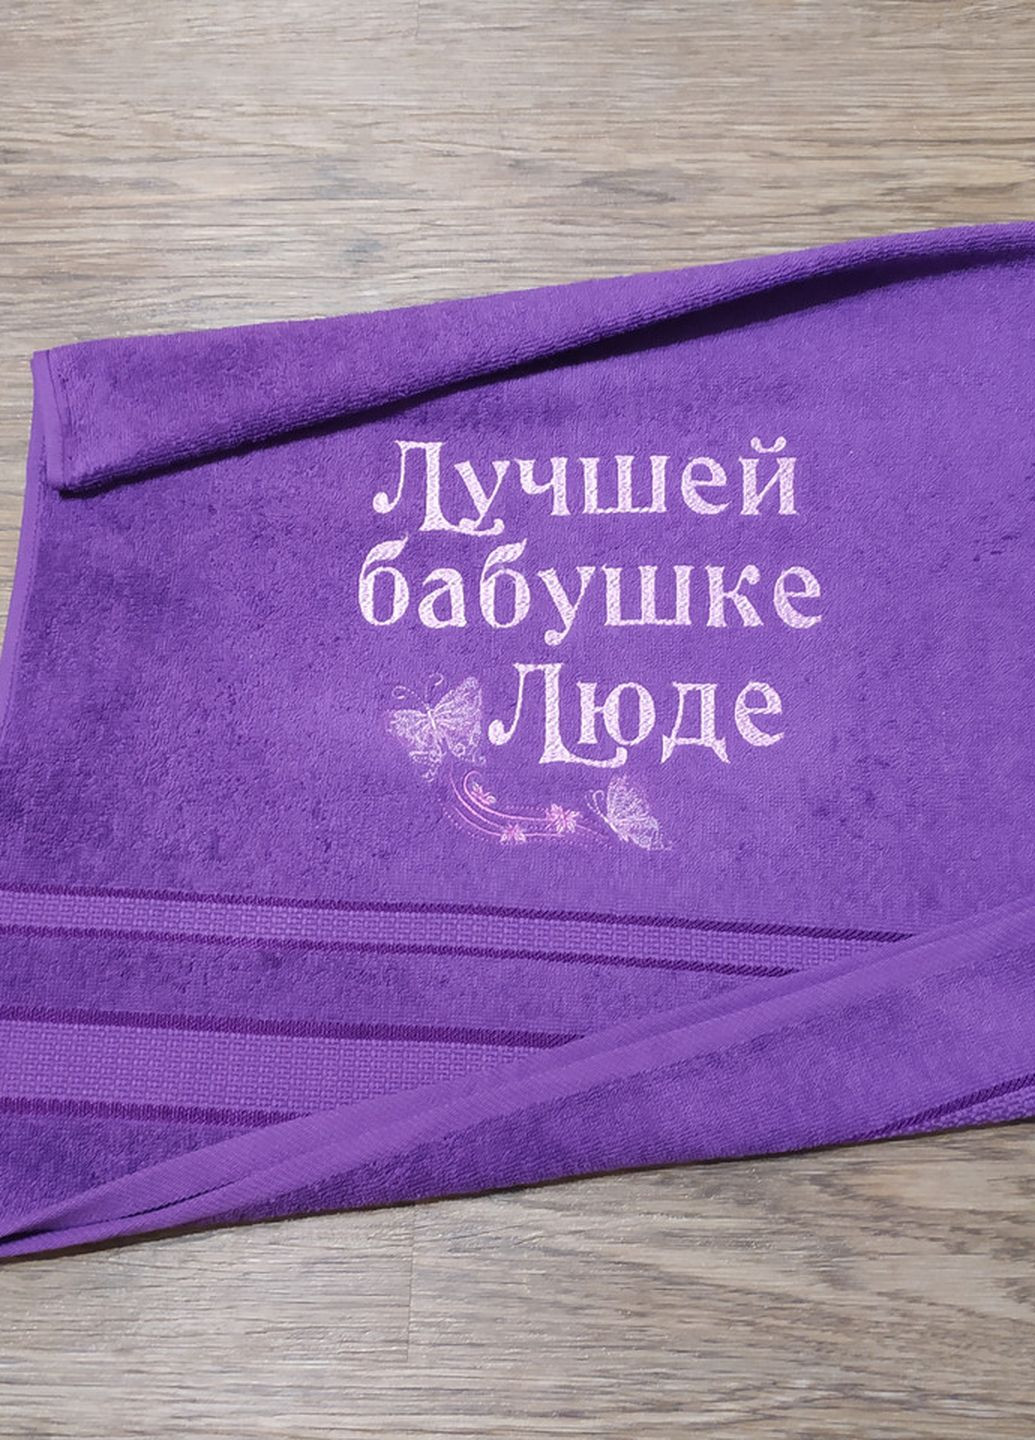 No Brand полотенце с именной вышивкой махровое лицевое 50*90 фиолетовый бабушке людмила 00109 однотонный фиолетовый производство - Украина